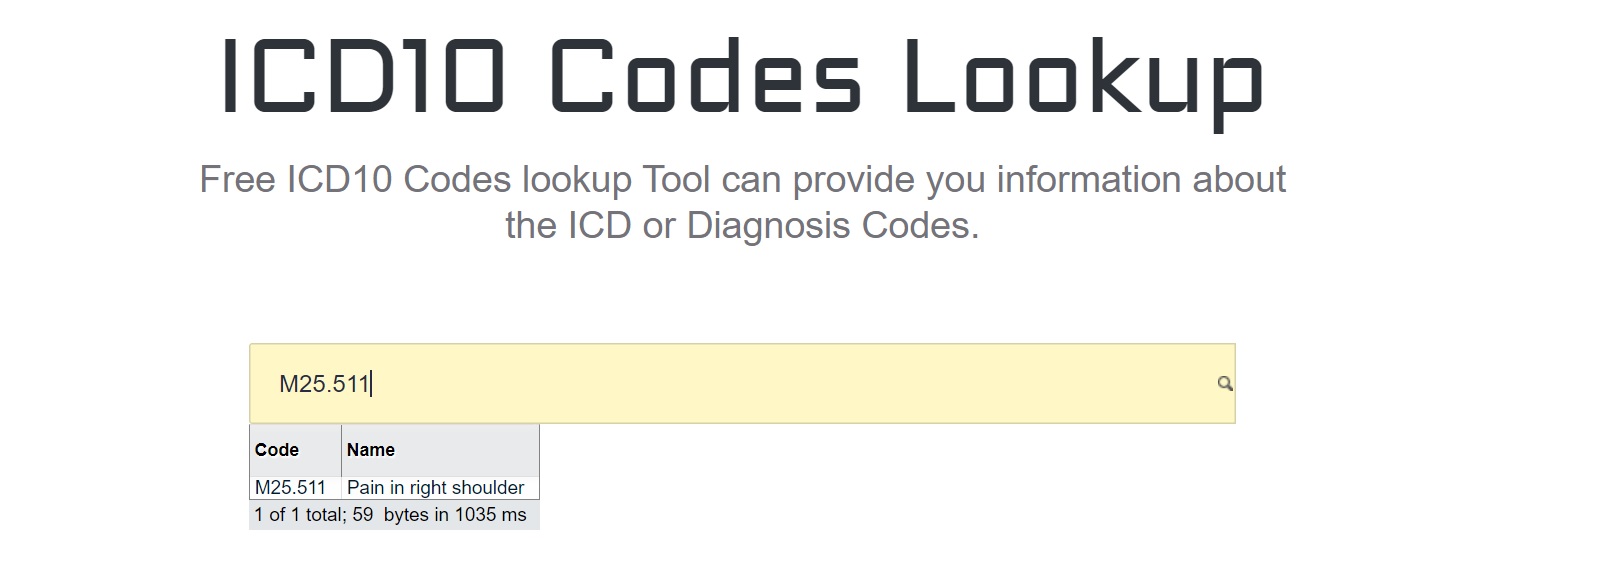 ICD10 Codes Lookup